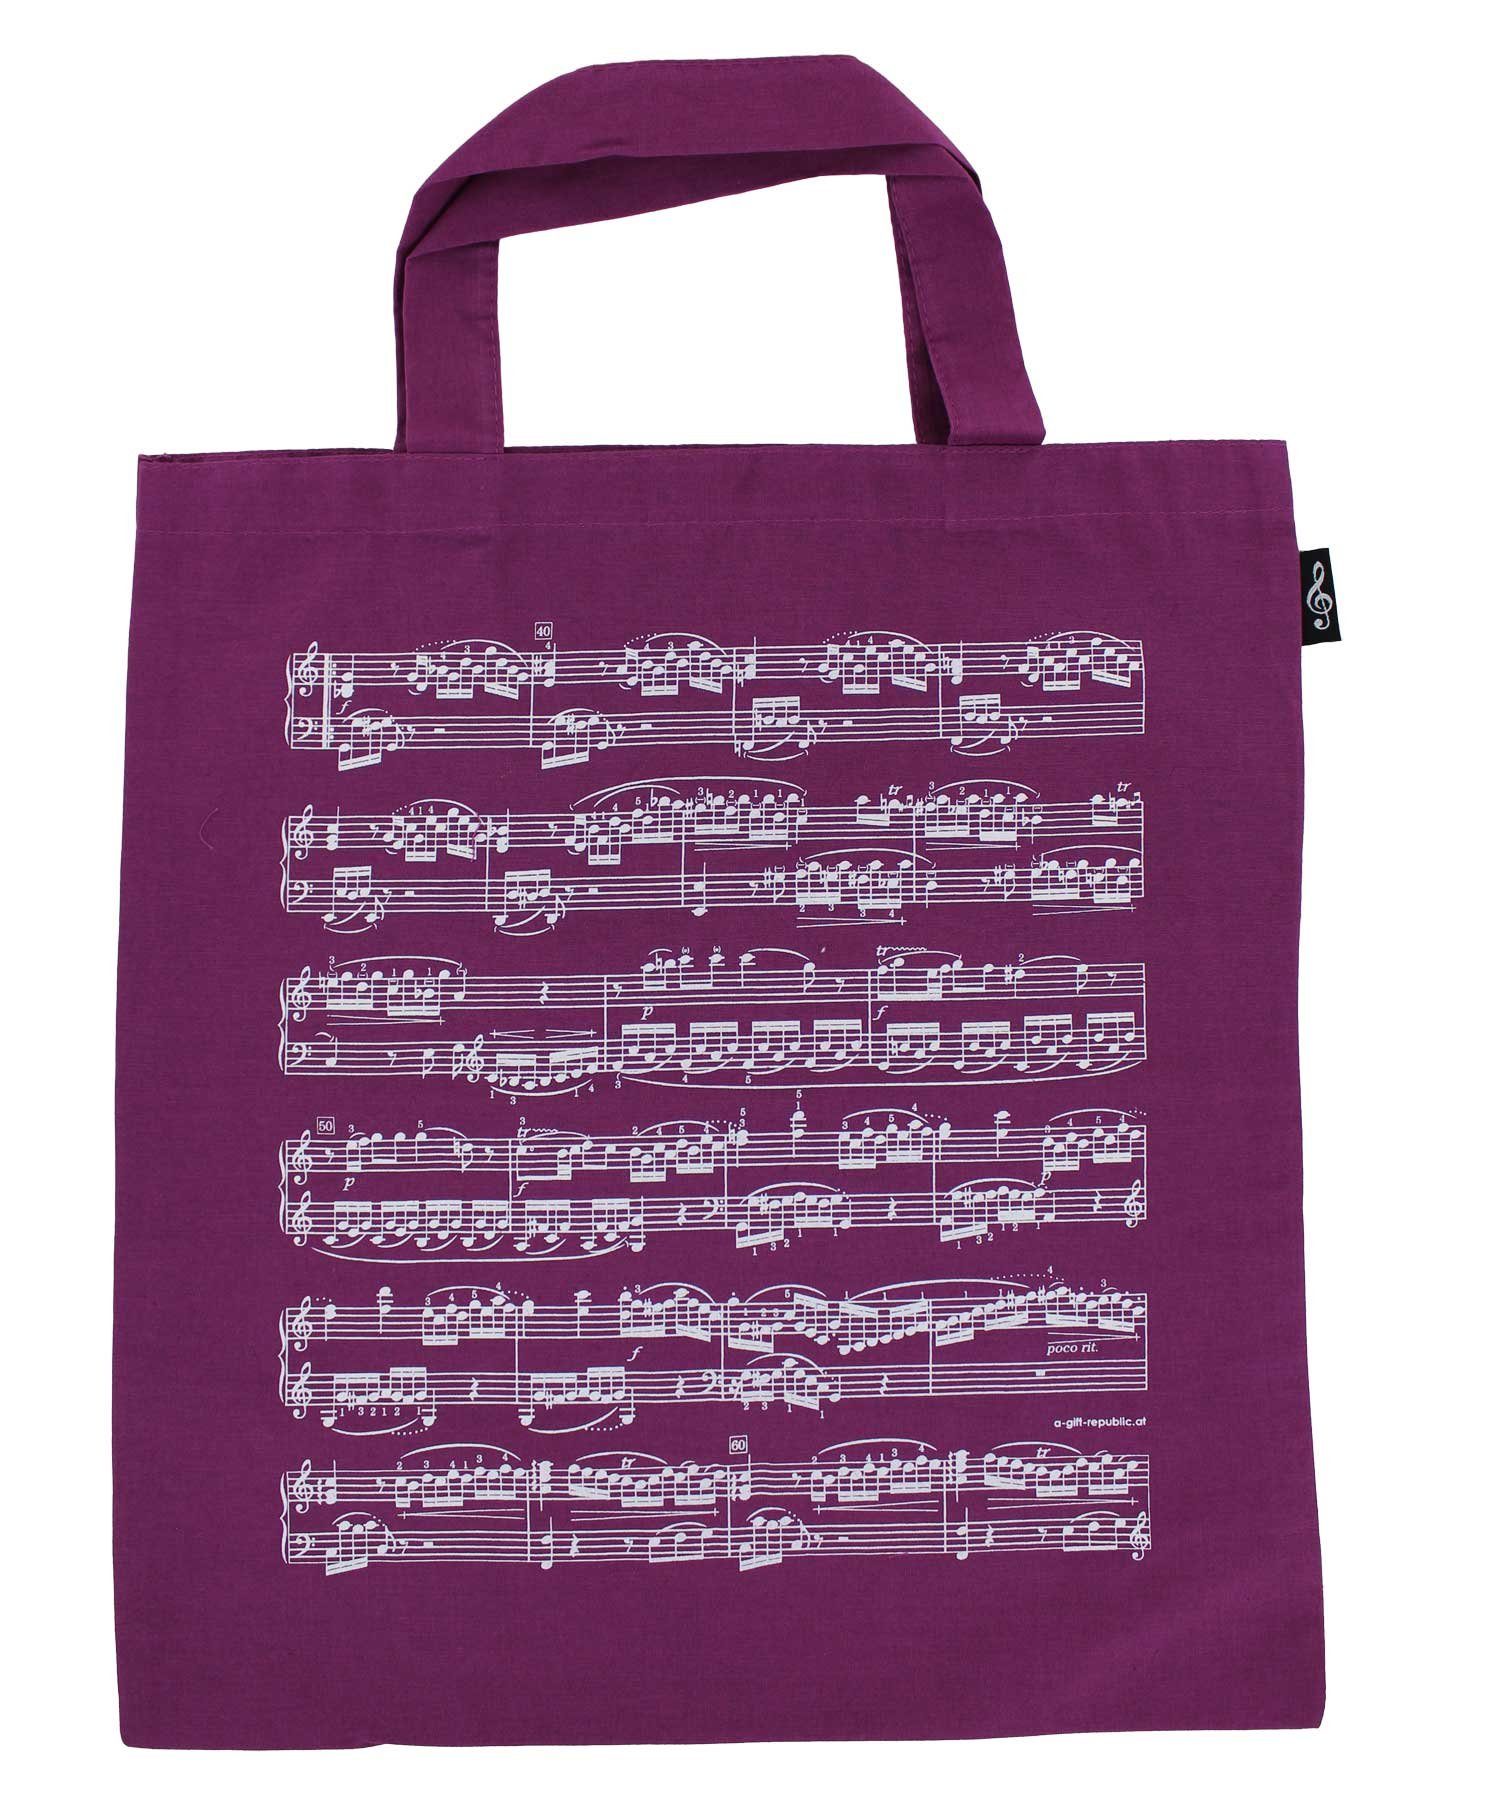 Notenzeilen, violett Baumwoll-Tragetasche für mugesh Tragetasche Musiker